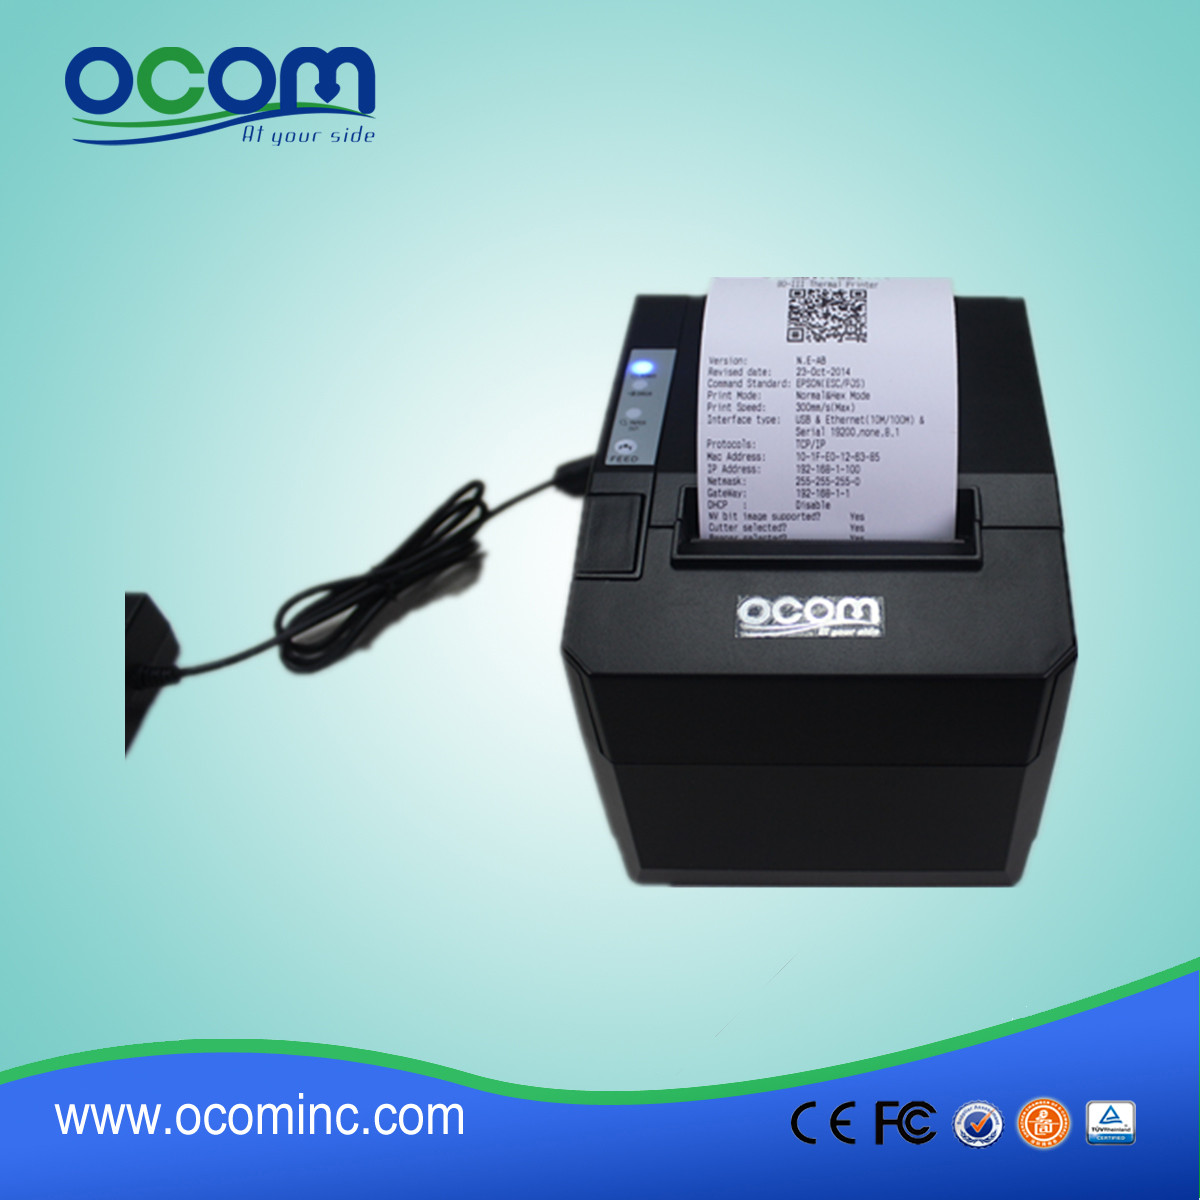 ocportal--88 ا 80 وأي فاي المالية سطح المكتب فاتورة إيصال الطابعات الحرارية